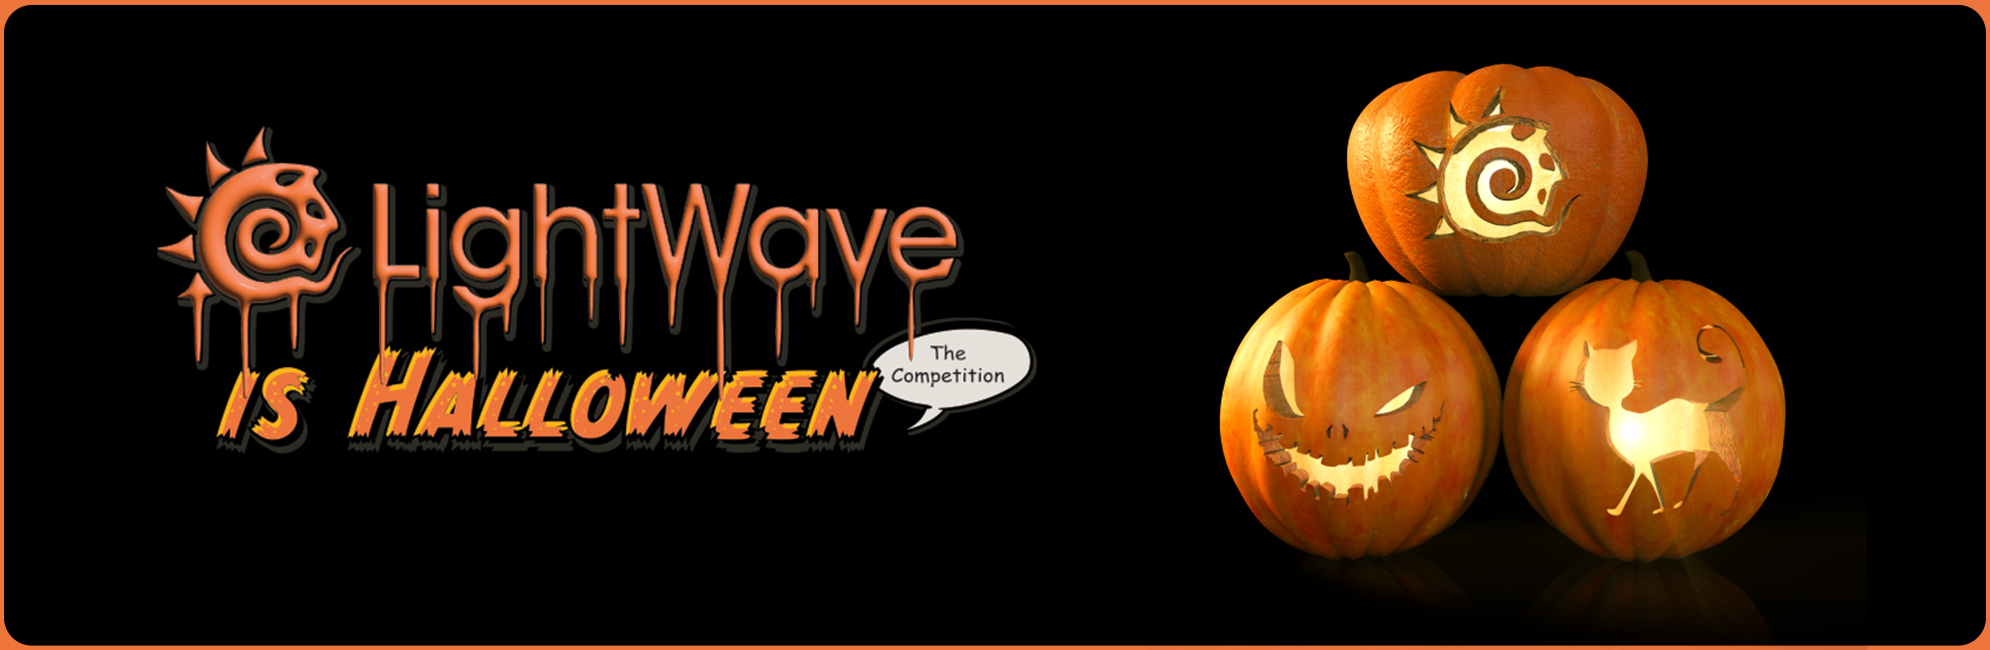 Nome: LightWave is Halloween  LightWave 3D Promo 20320918.jpg
Visite: 63
Dimensione: 387.4 KB